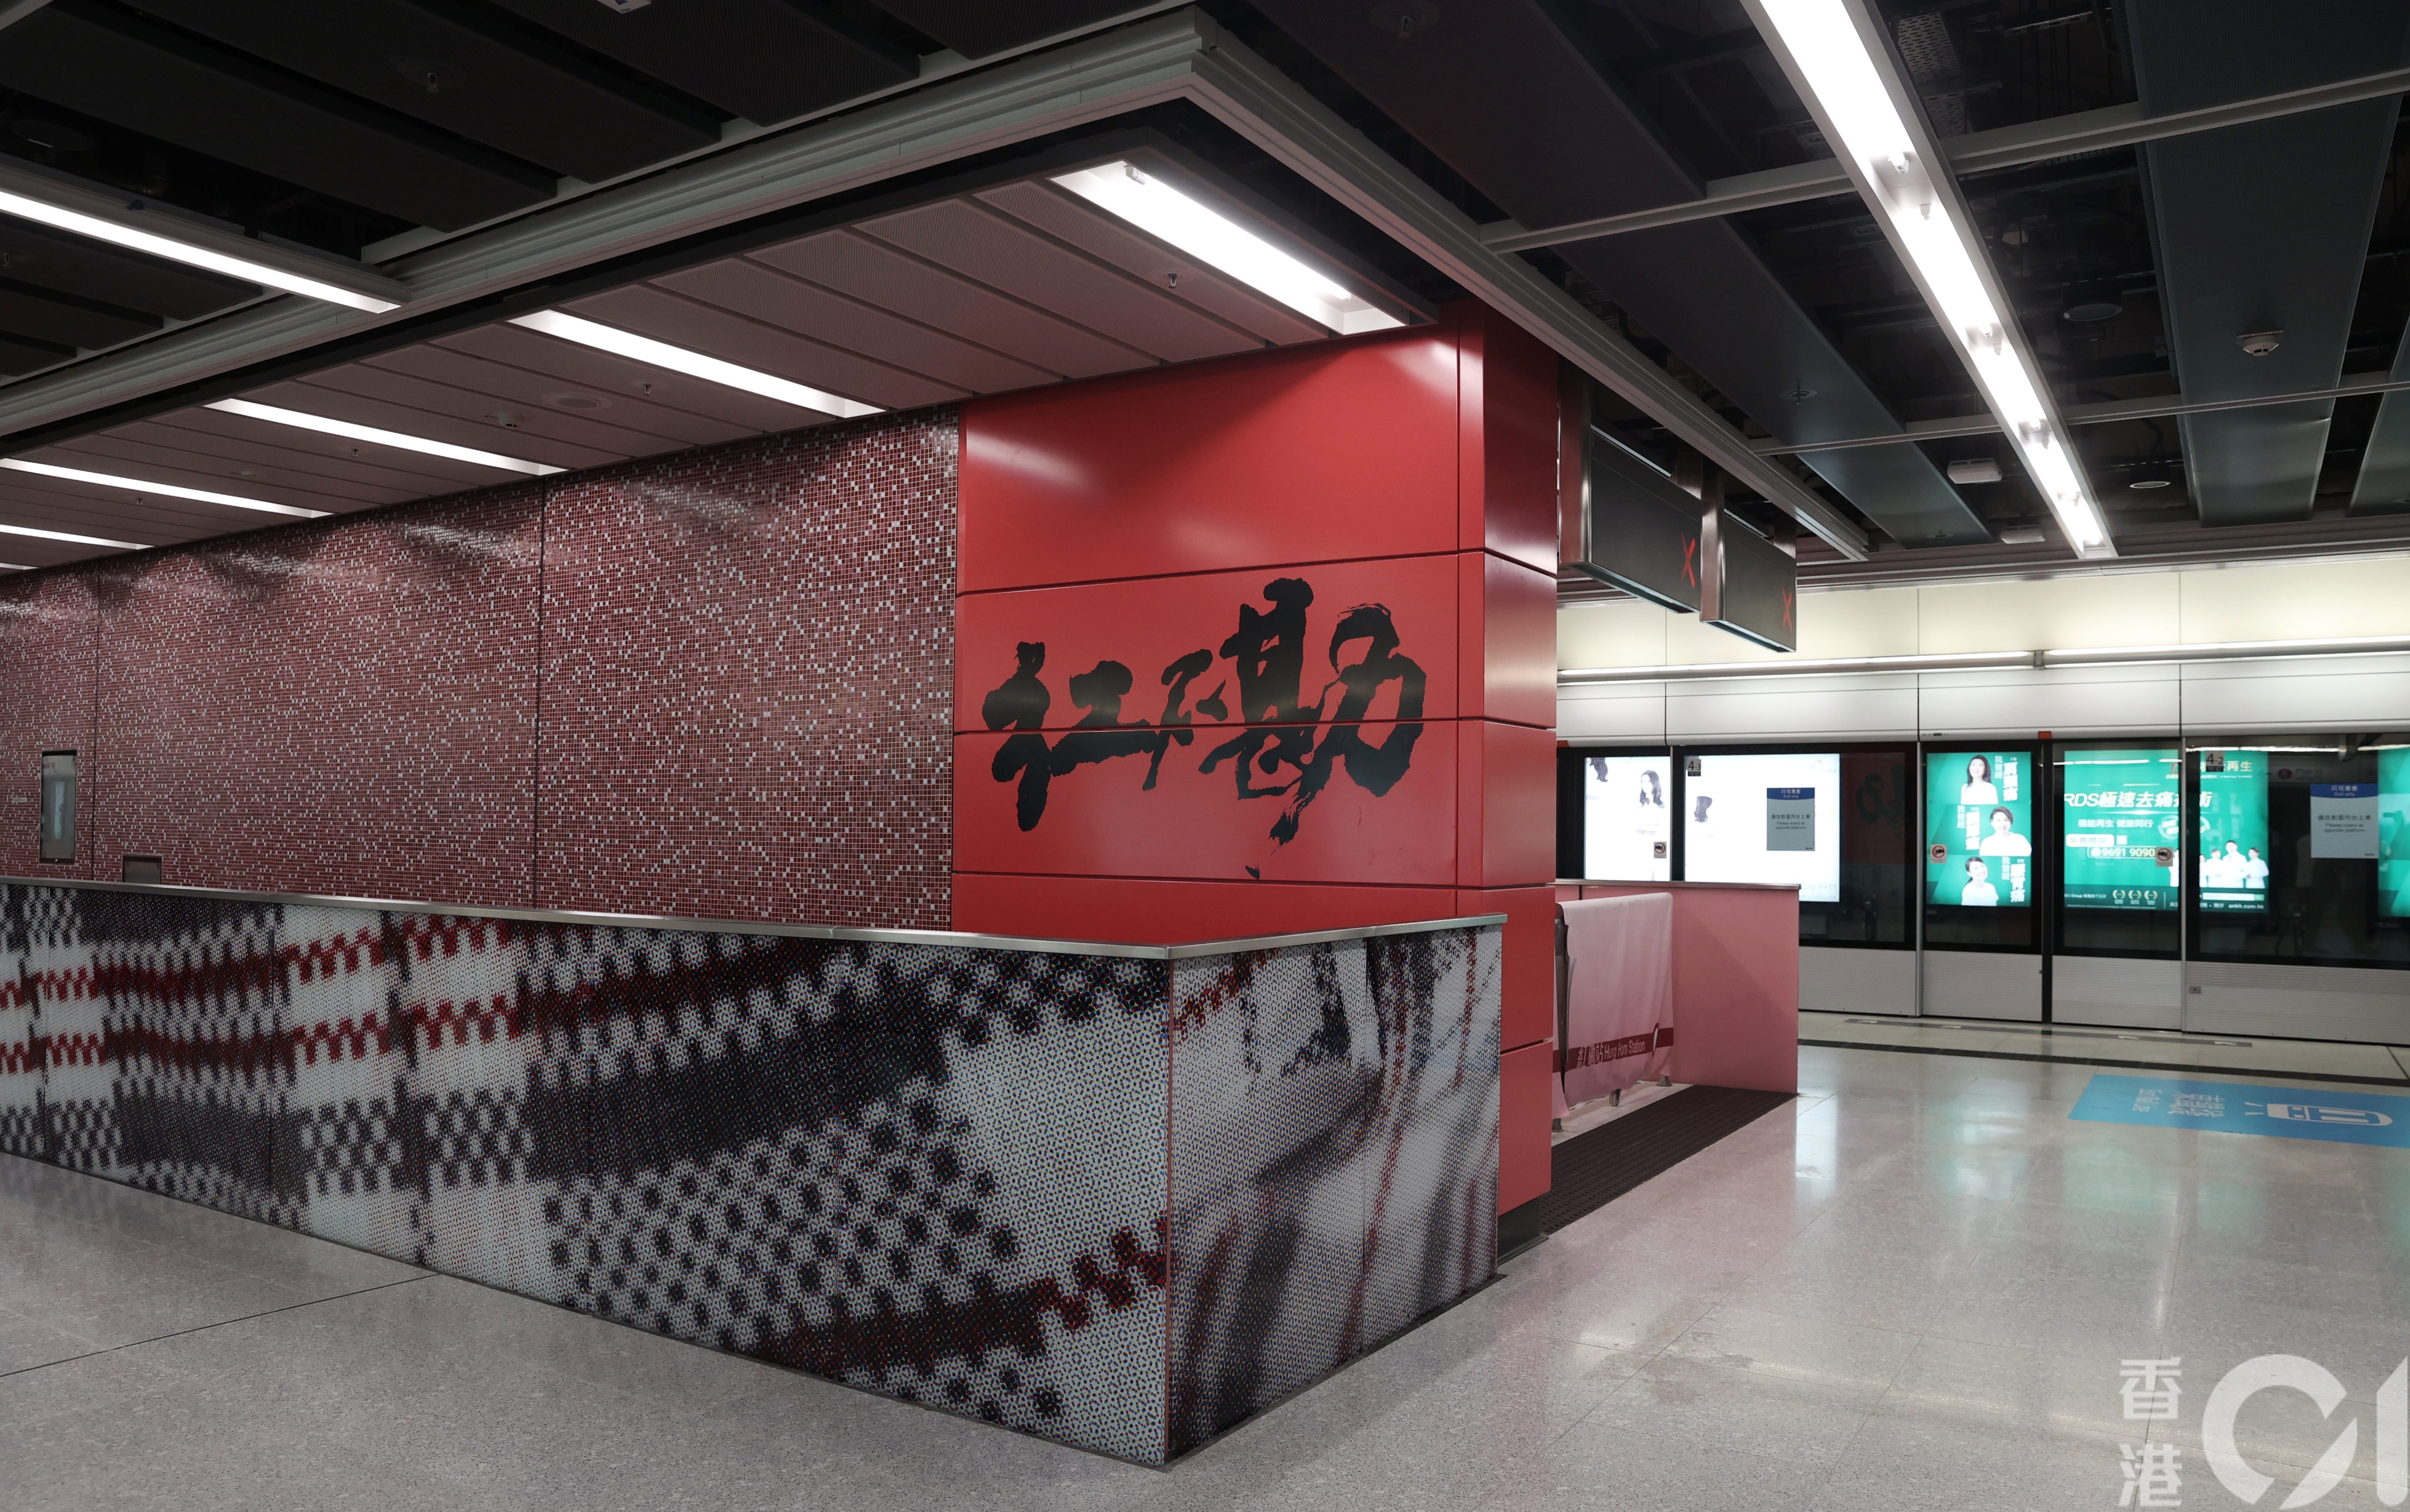 屯馬線 紅磡站新月台6 啟用東西鐵轉線需行3分鐘即睇新安排 香港01 社會新聞